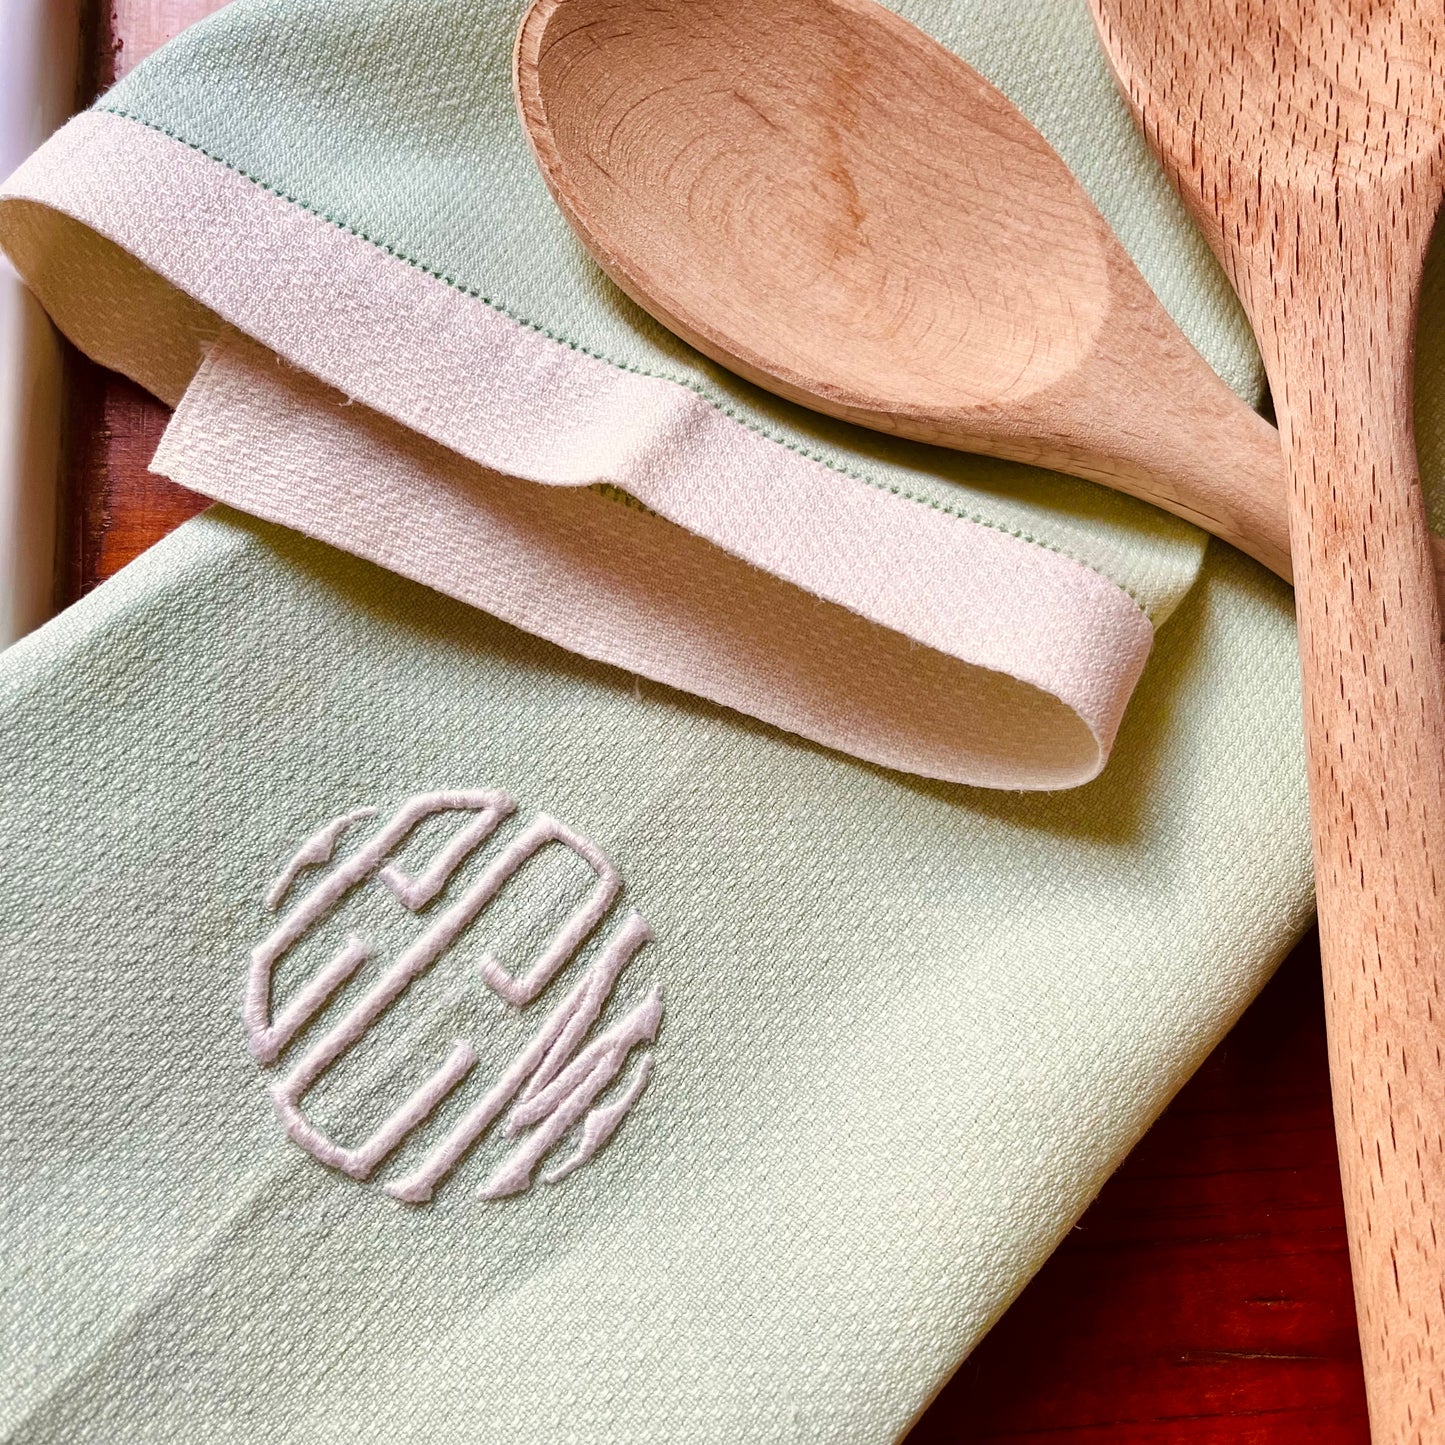 Embroidered tea towel